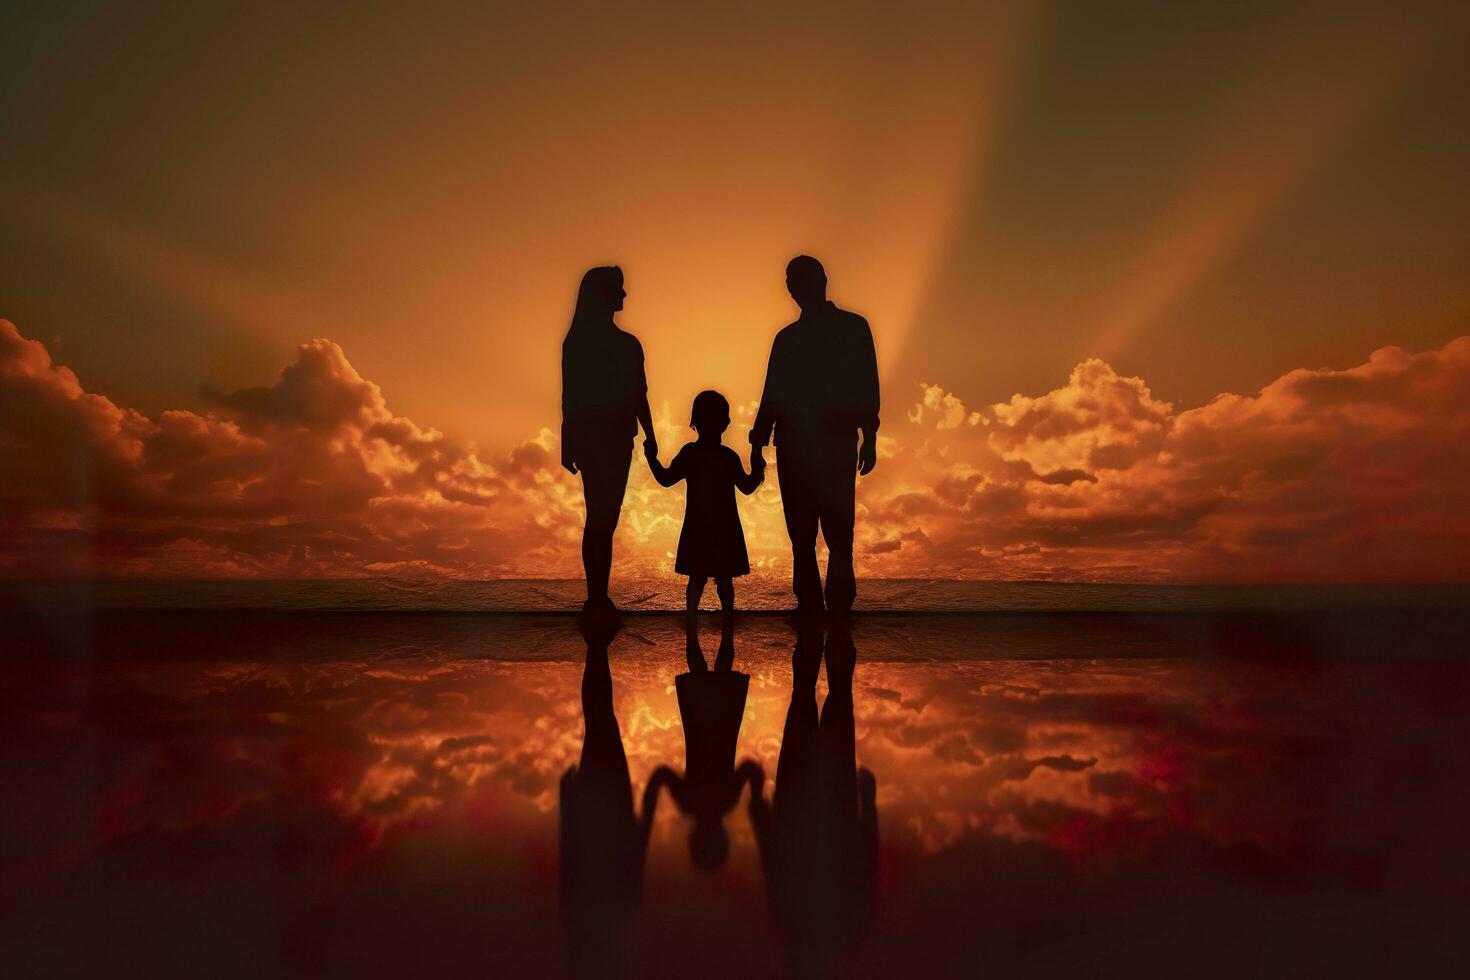 sombra do feliz família junto, pais com seus pequeno bebê às pôr do sol. uma silhueta do amor e unidade. ai generativo foto